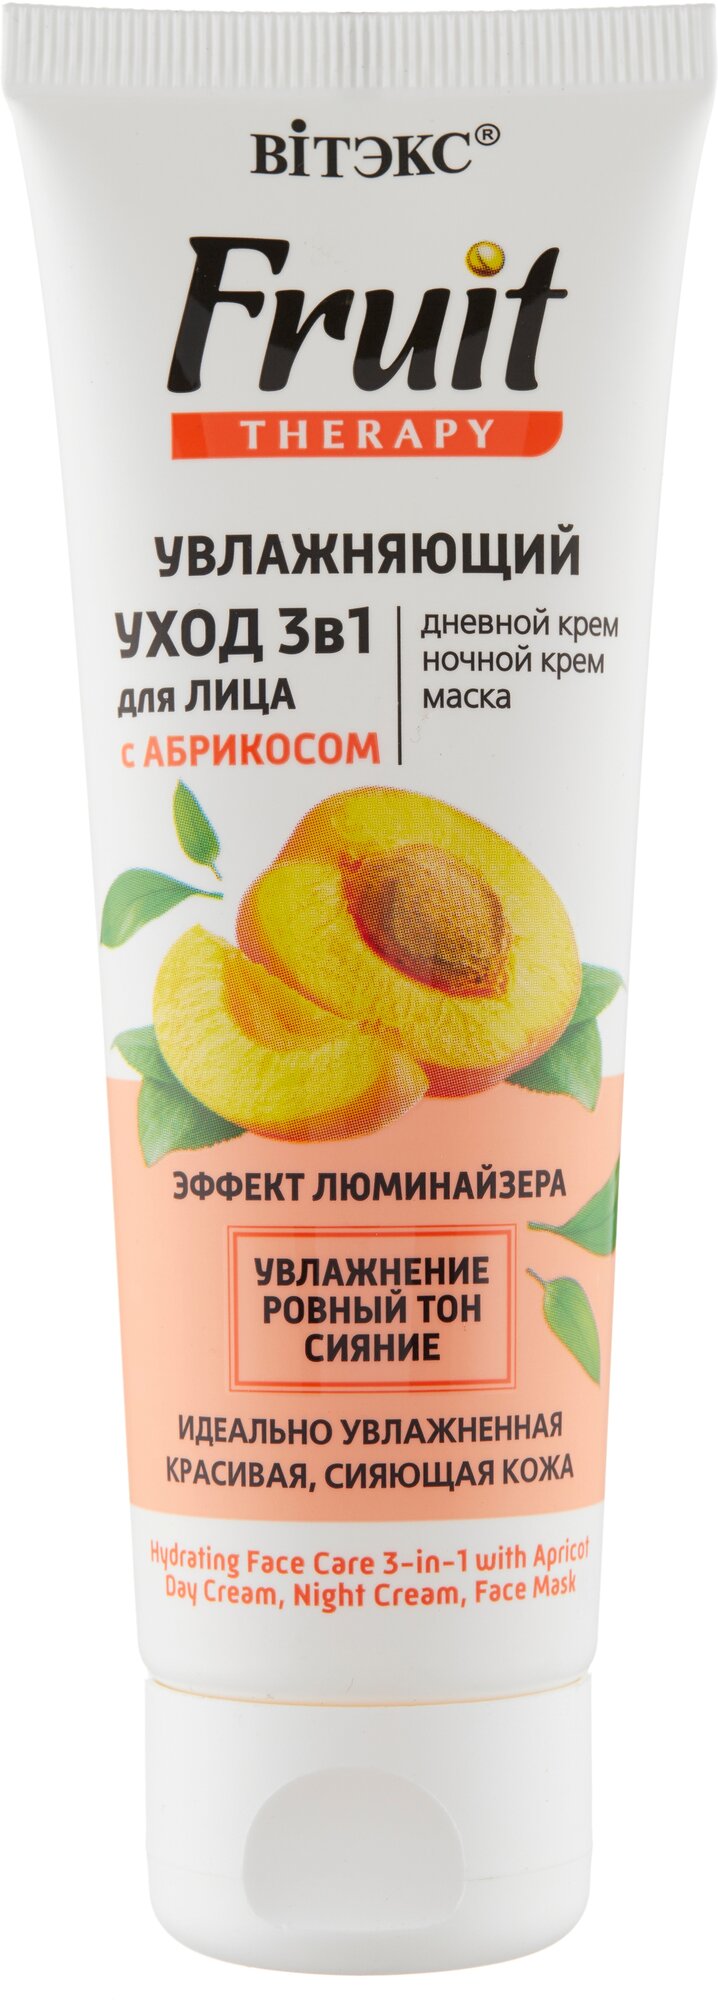 Витэкс Fruit Therapy Увлажняющий уход 3в1 для лица с абрикосом